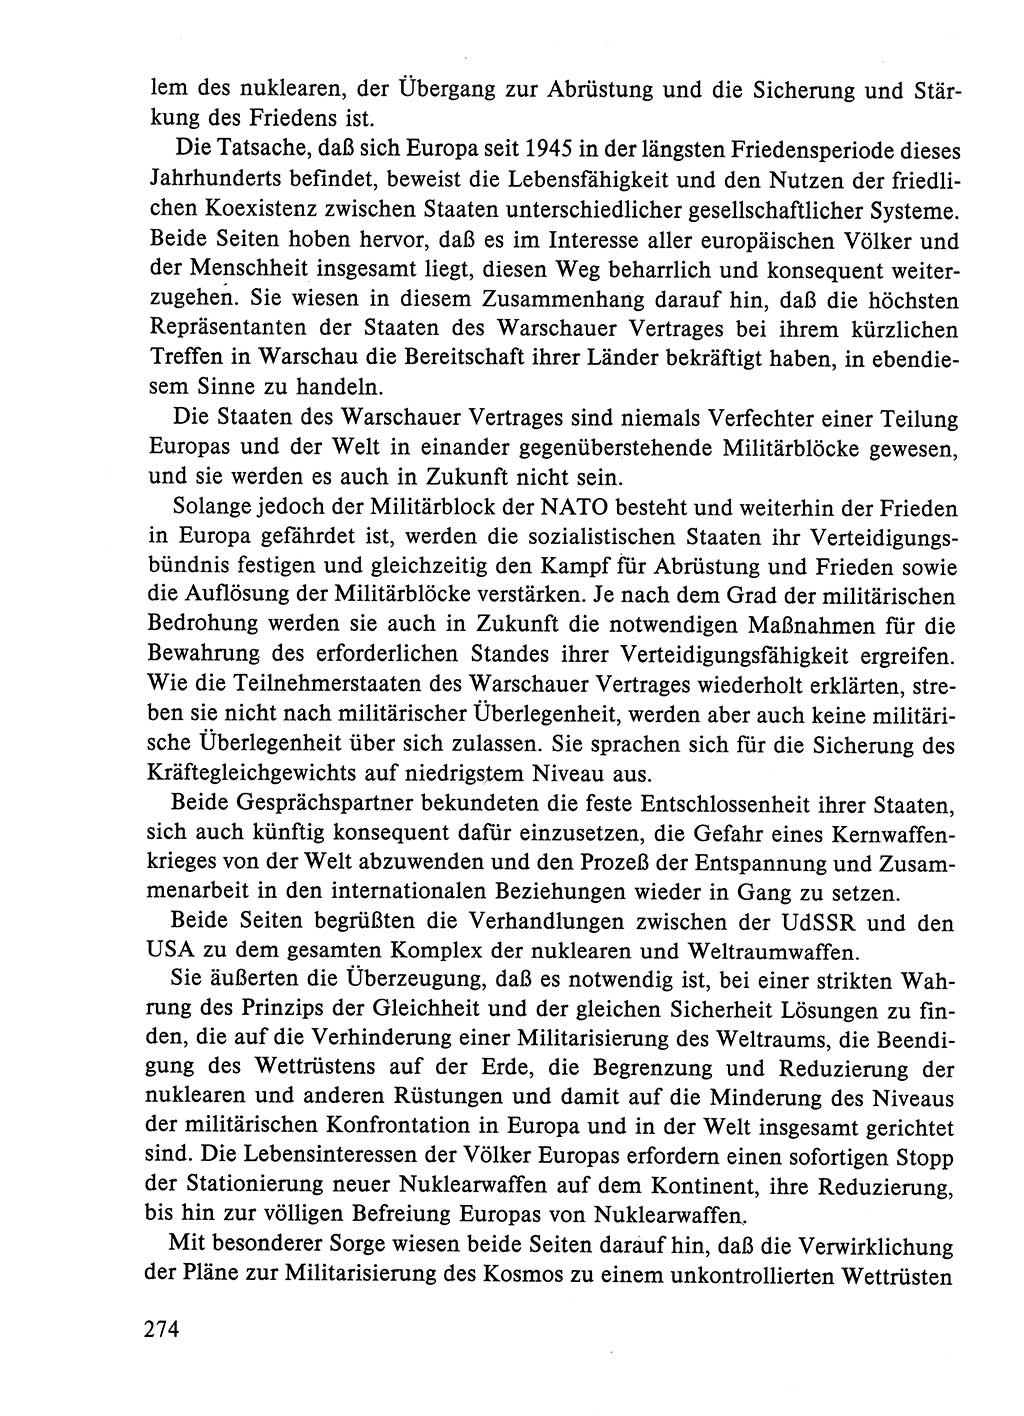 Dokumente der Sozialistischen Einheitspartei Deutschlands (SED) [Deutsche Demokratische Republik (DDR)] 1984-1985, Seite 153 (Dok. SED DDR 1984-1985, S. 153)